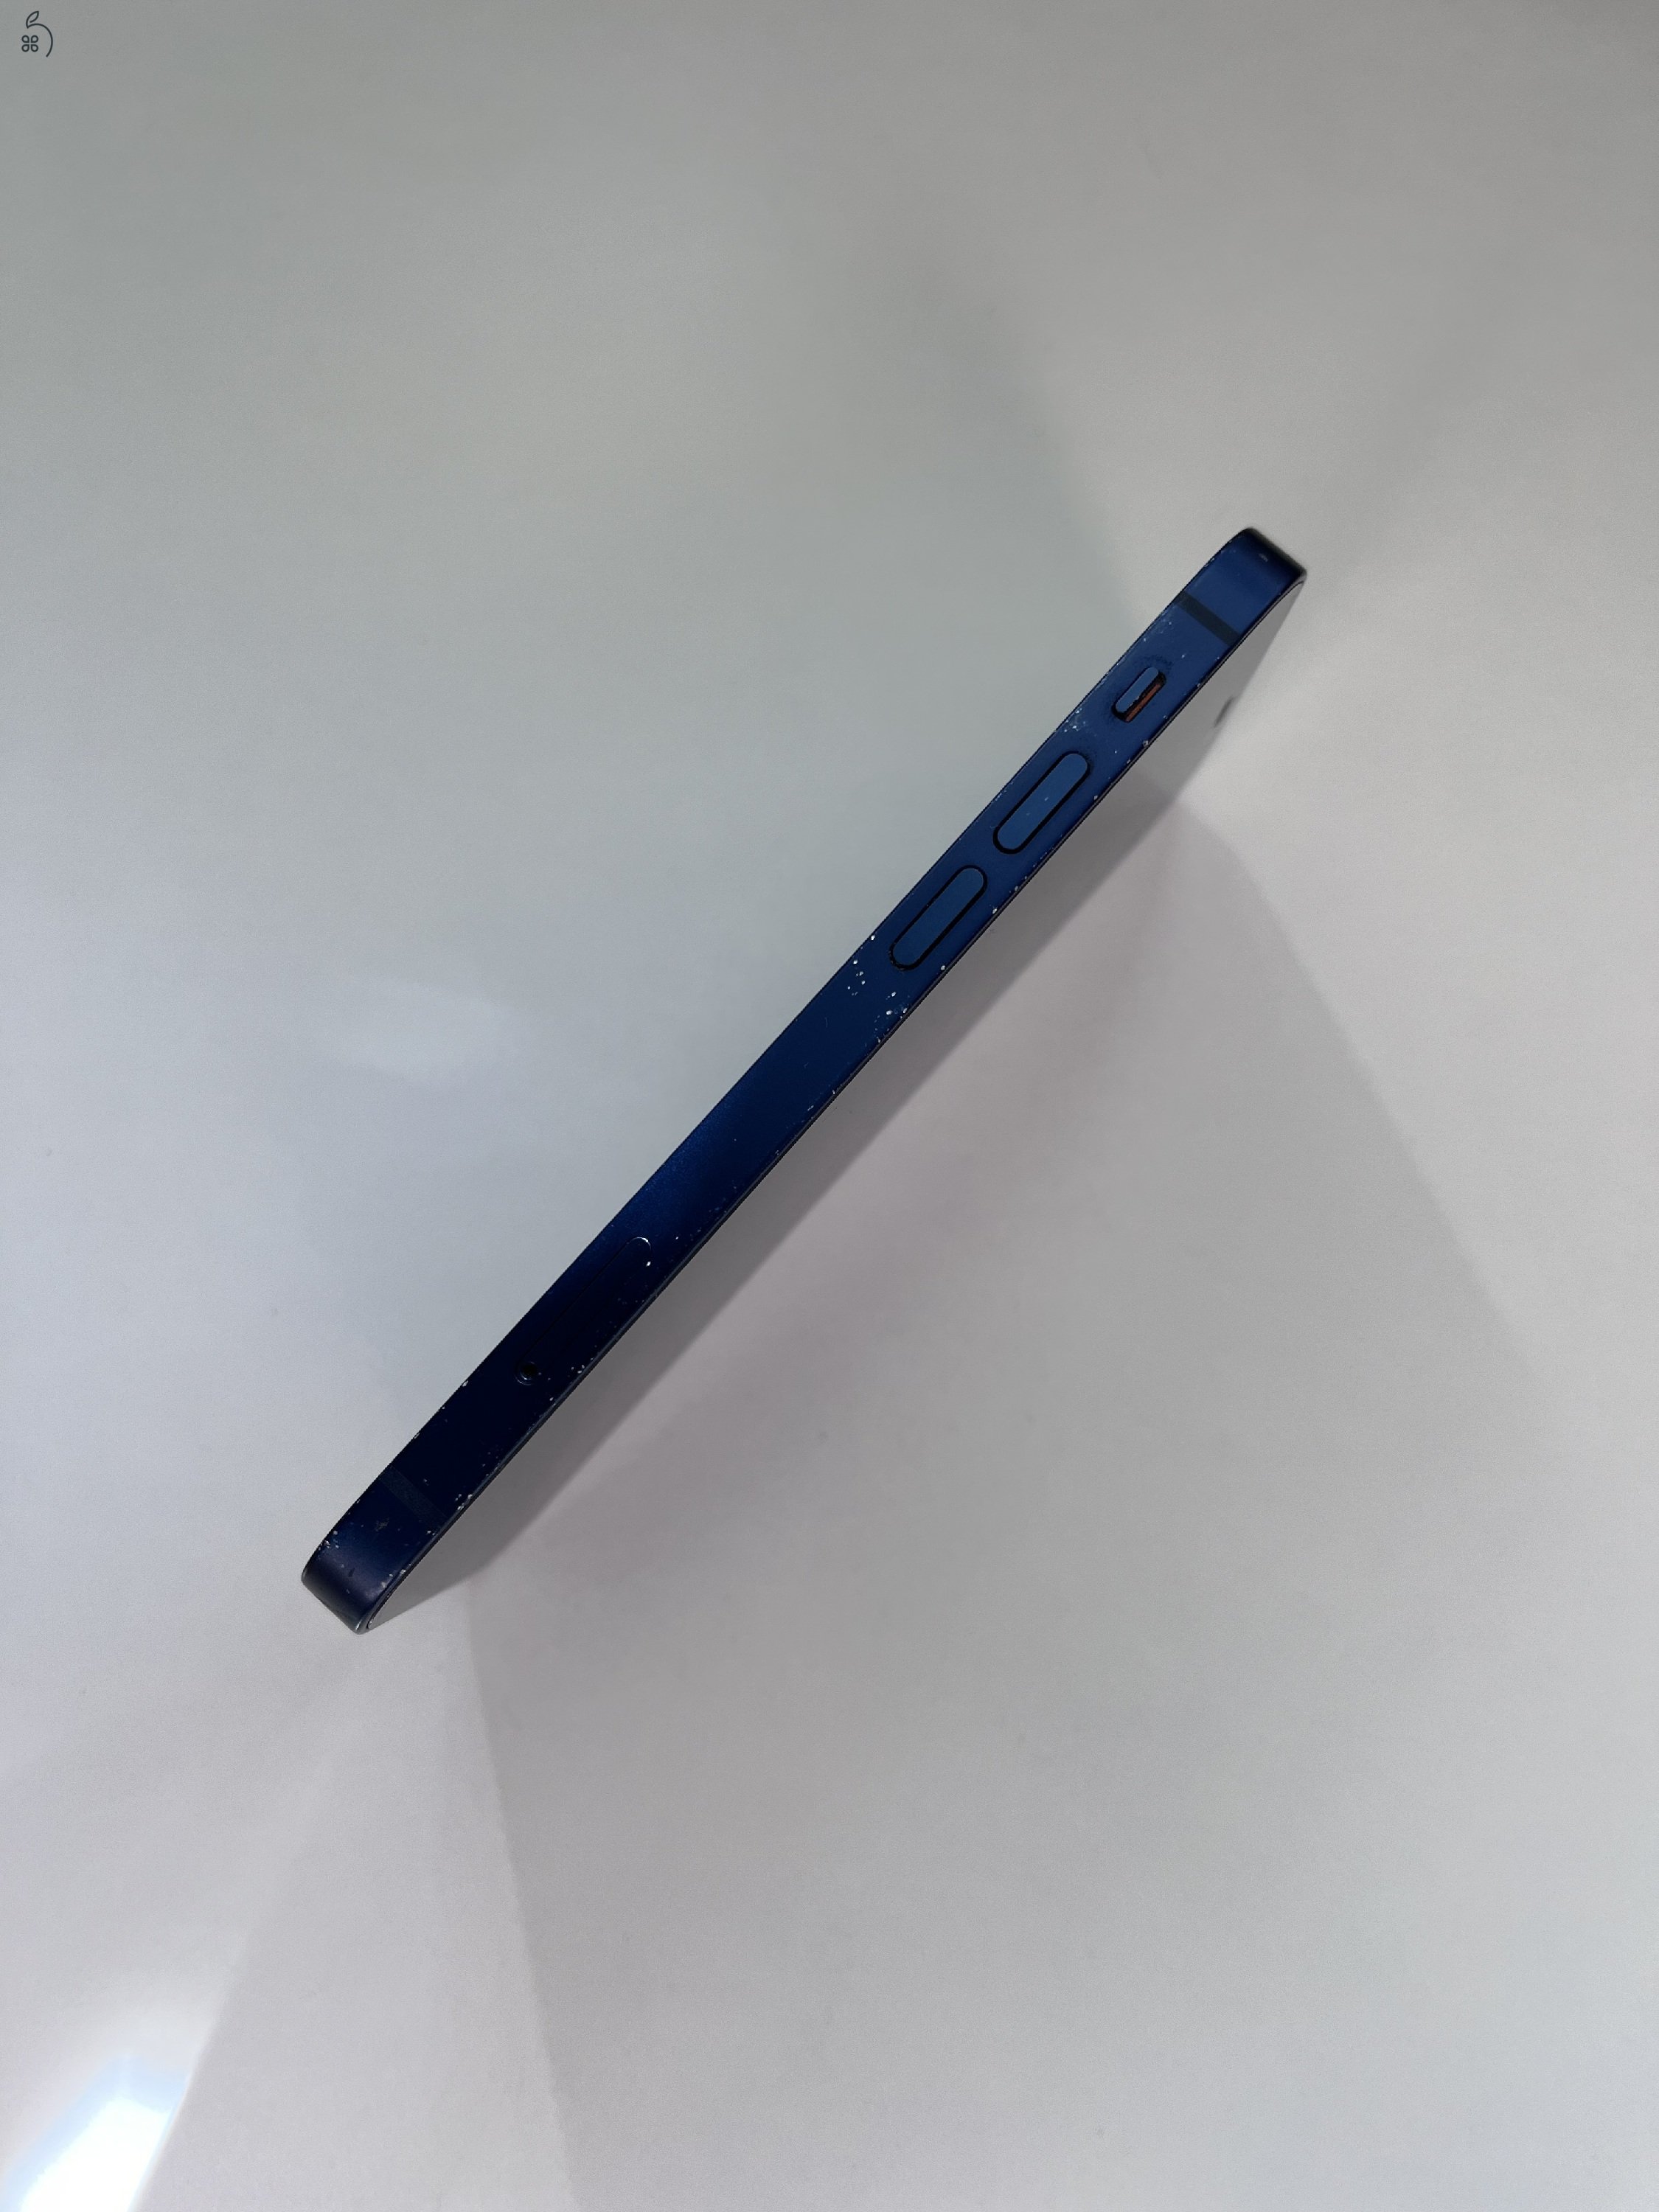 iPhone 12 mini 128 GB, kék, használt, cserélt utángyártott akkuval